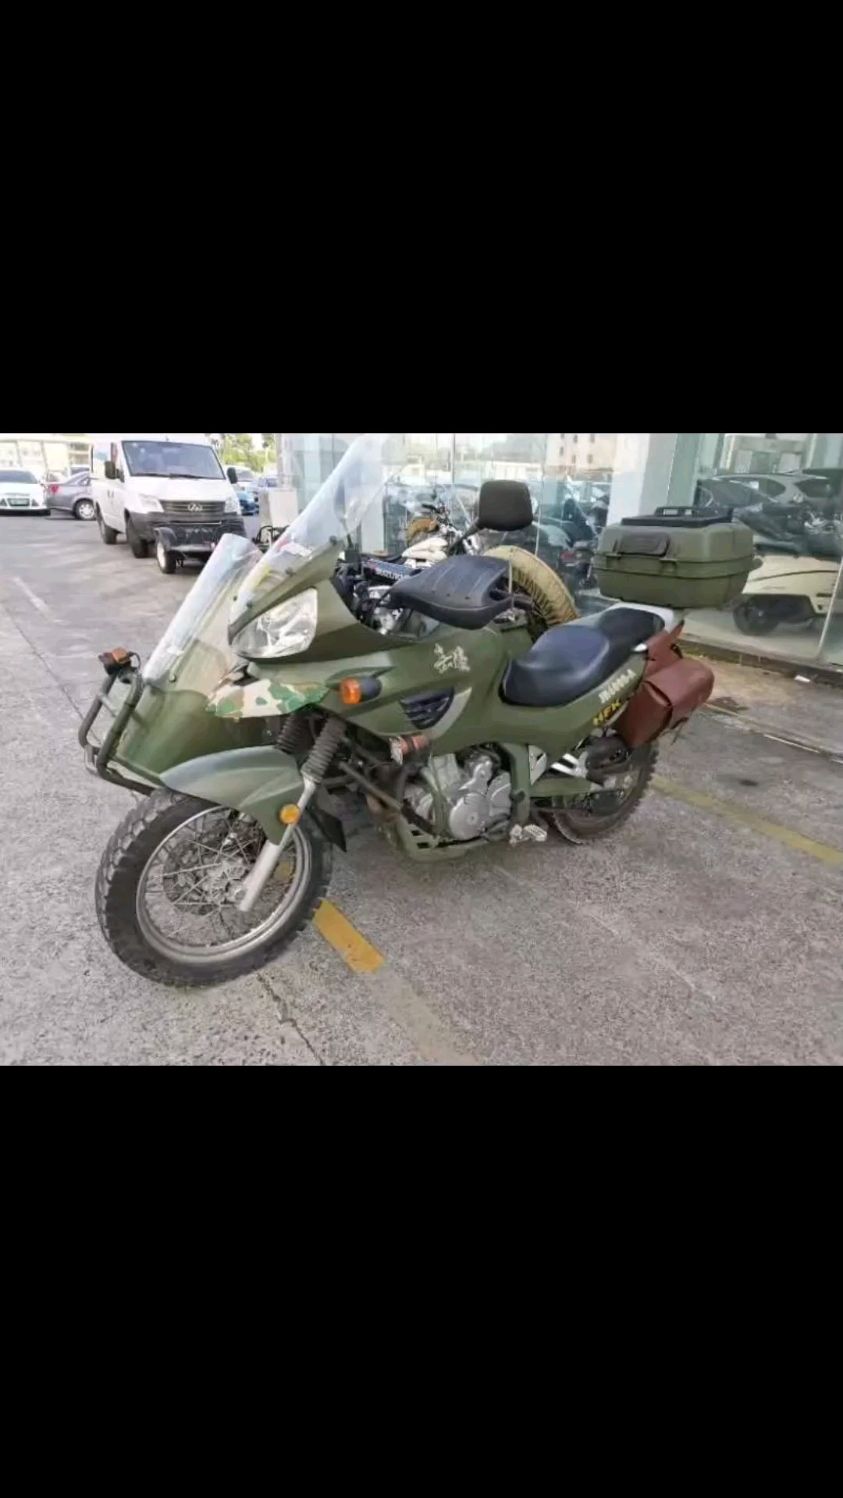 2015年嘉陵600边三轮摩托车,16000多公里,嘉陵大公鸡,侉子,侧三轮